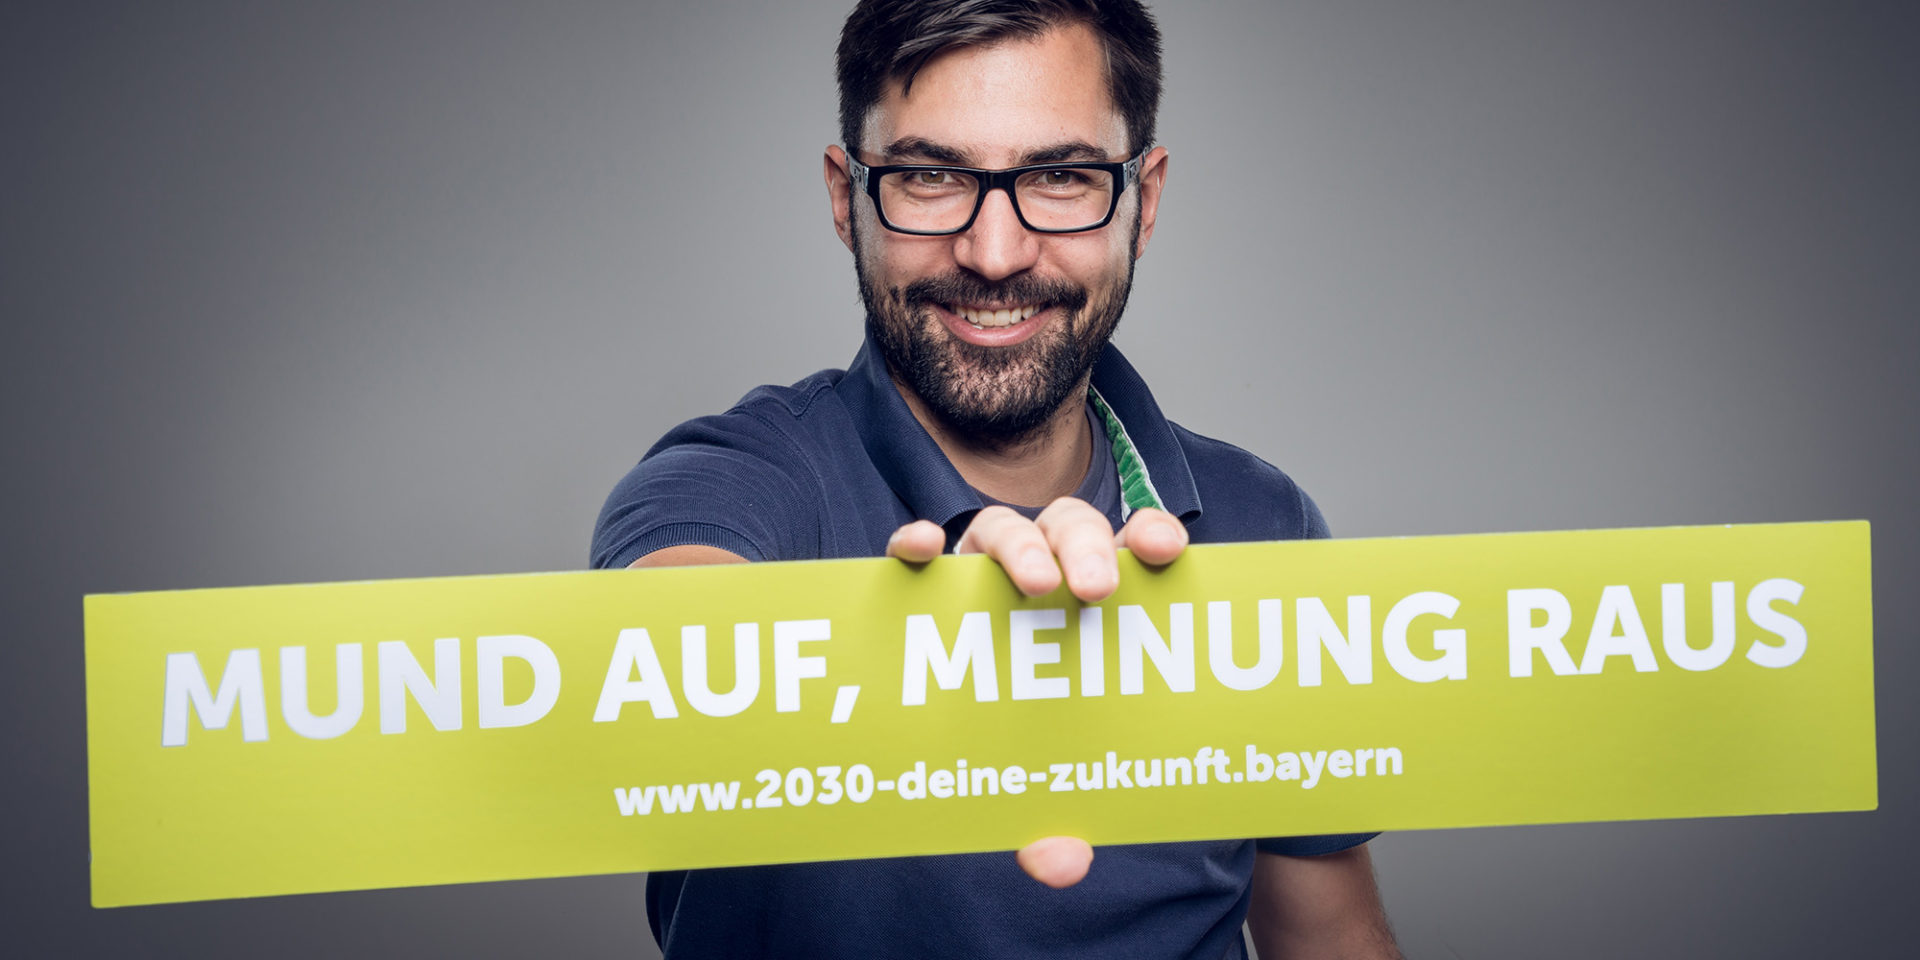 Ein Mann hält einen Banner mit dem Schriftzug "Mund auf, Meinung raus - www.2030-deine-zukunft.bayern" in der Hand